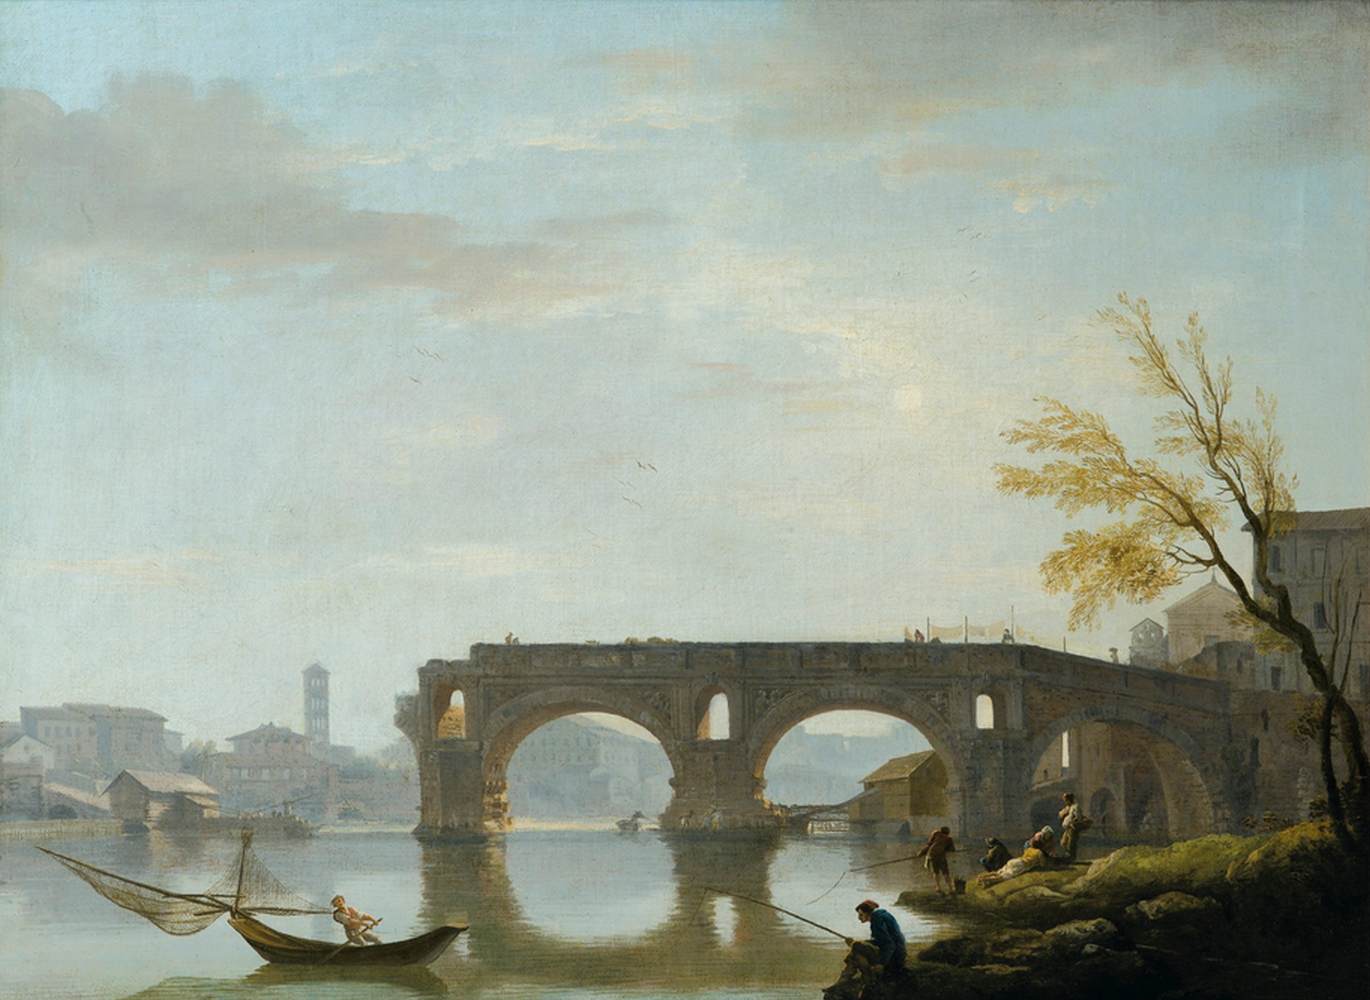 View of the Rotto Bridge, Rome